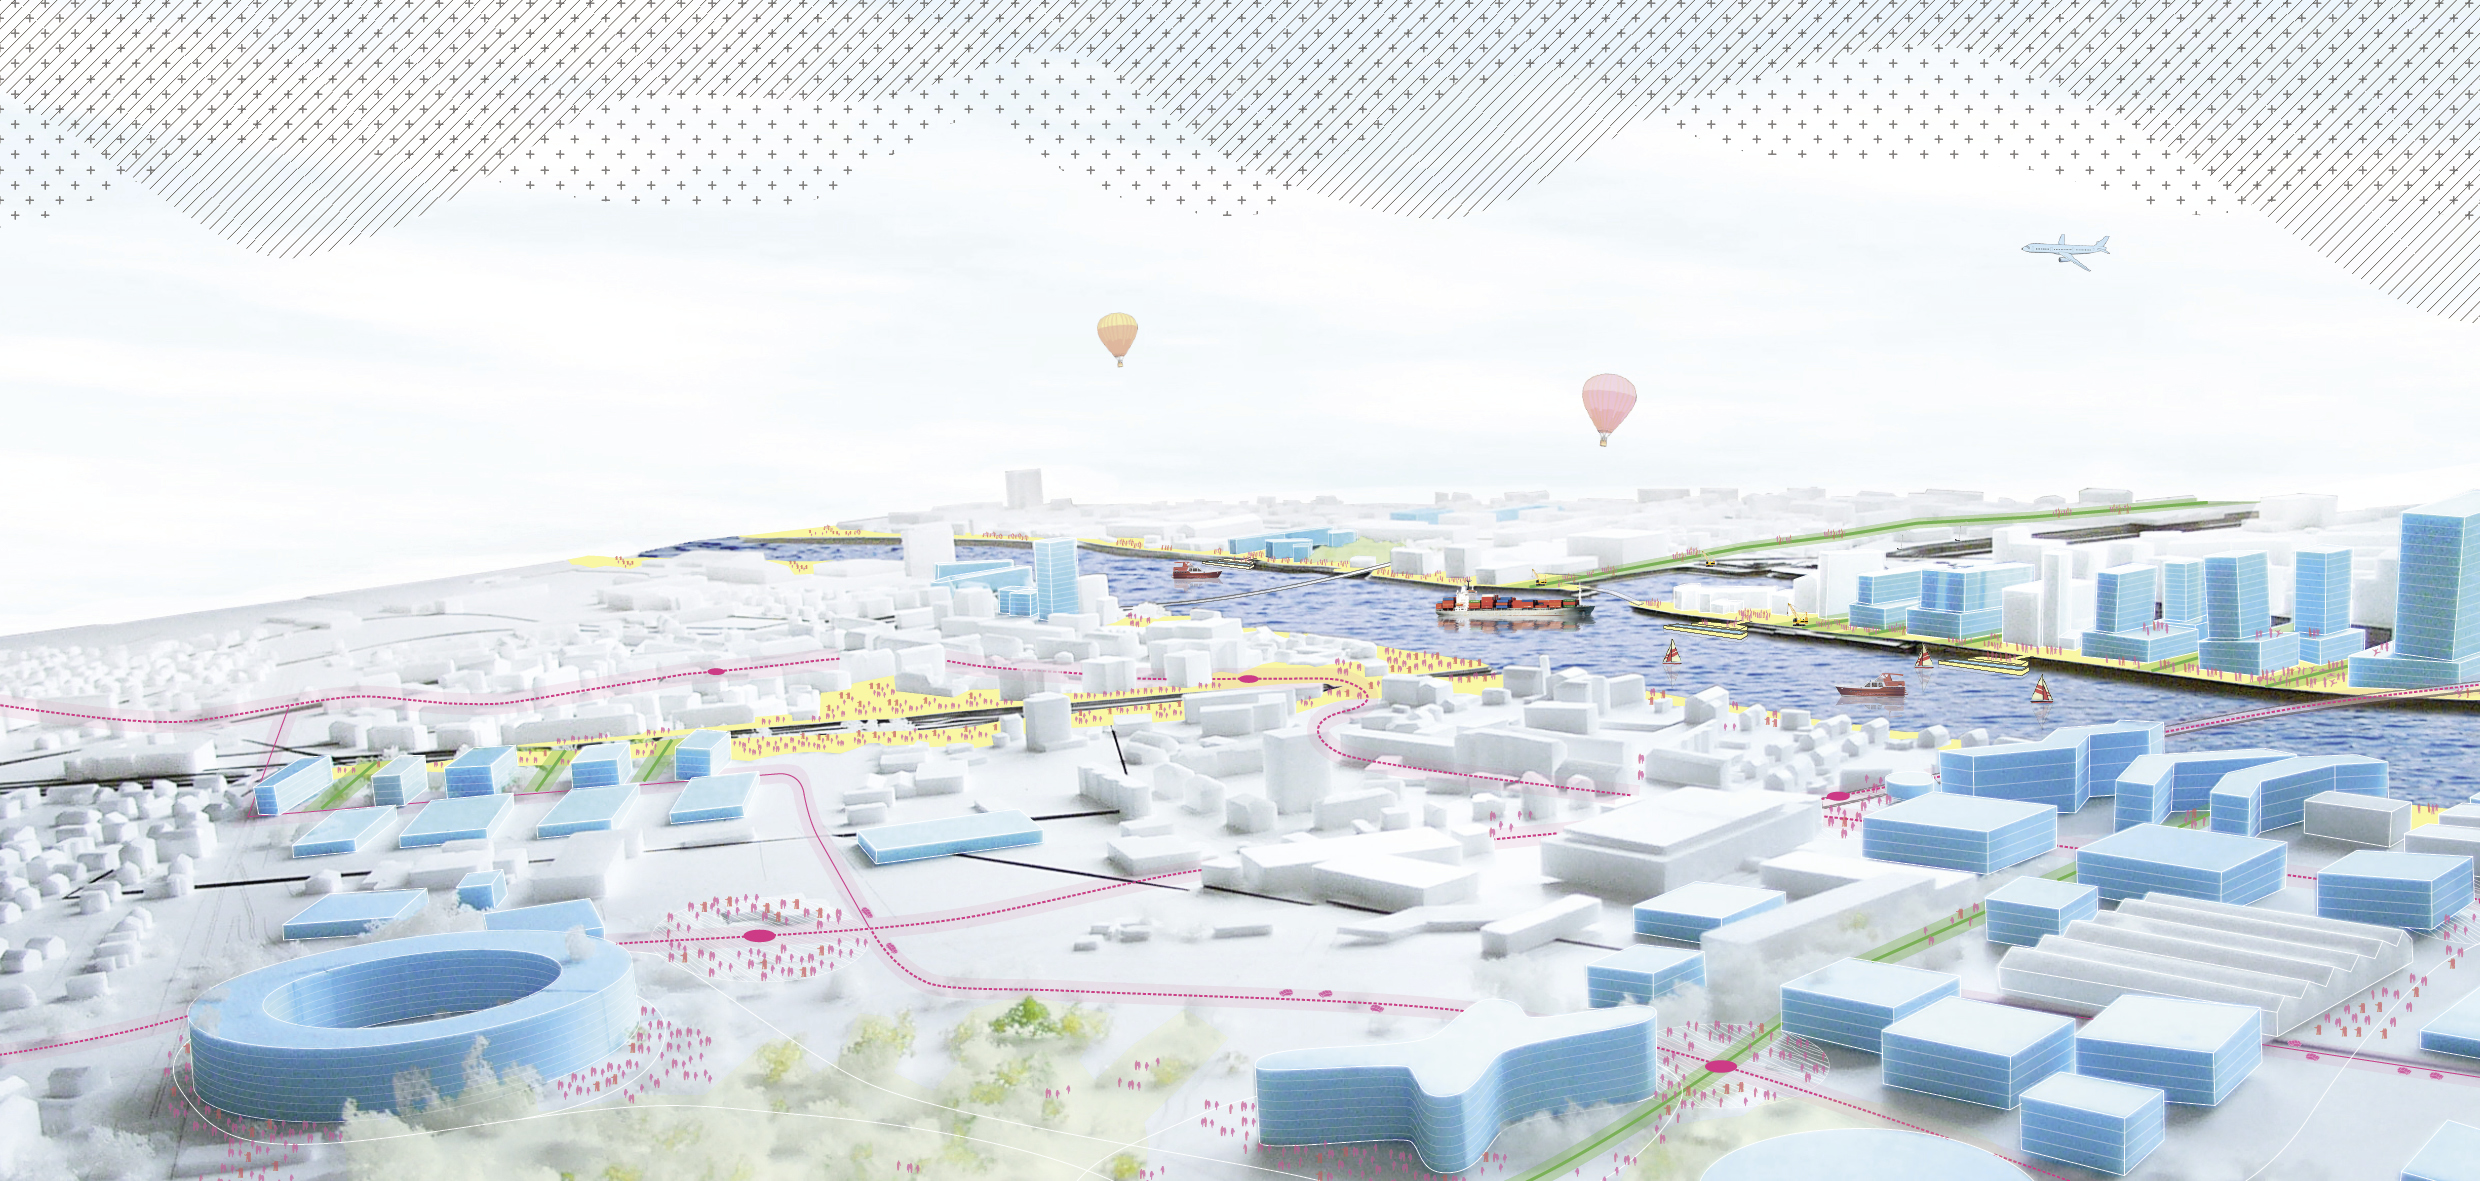 Eines der nominierten Projekte an der IBA: Das länderübergreifende Quartier «3-Land» als urbane Vision. Ingesamt werden nun 32 städtebauliche Ideen aus der Region Basel, dem Elsass und Südbaden vorgestellt.